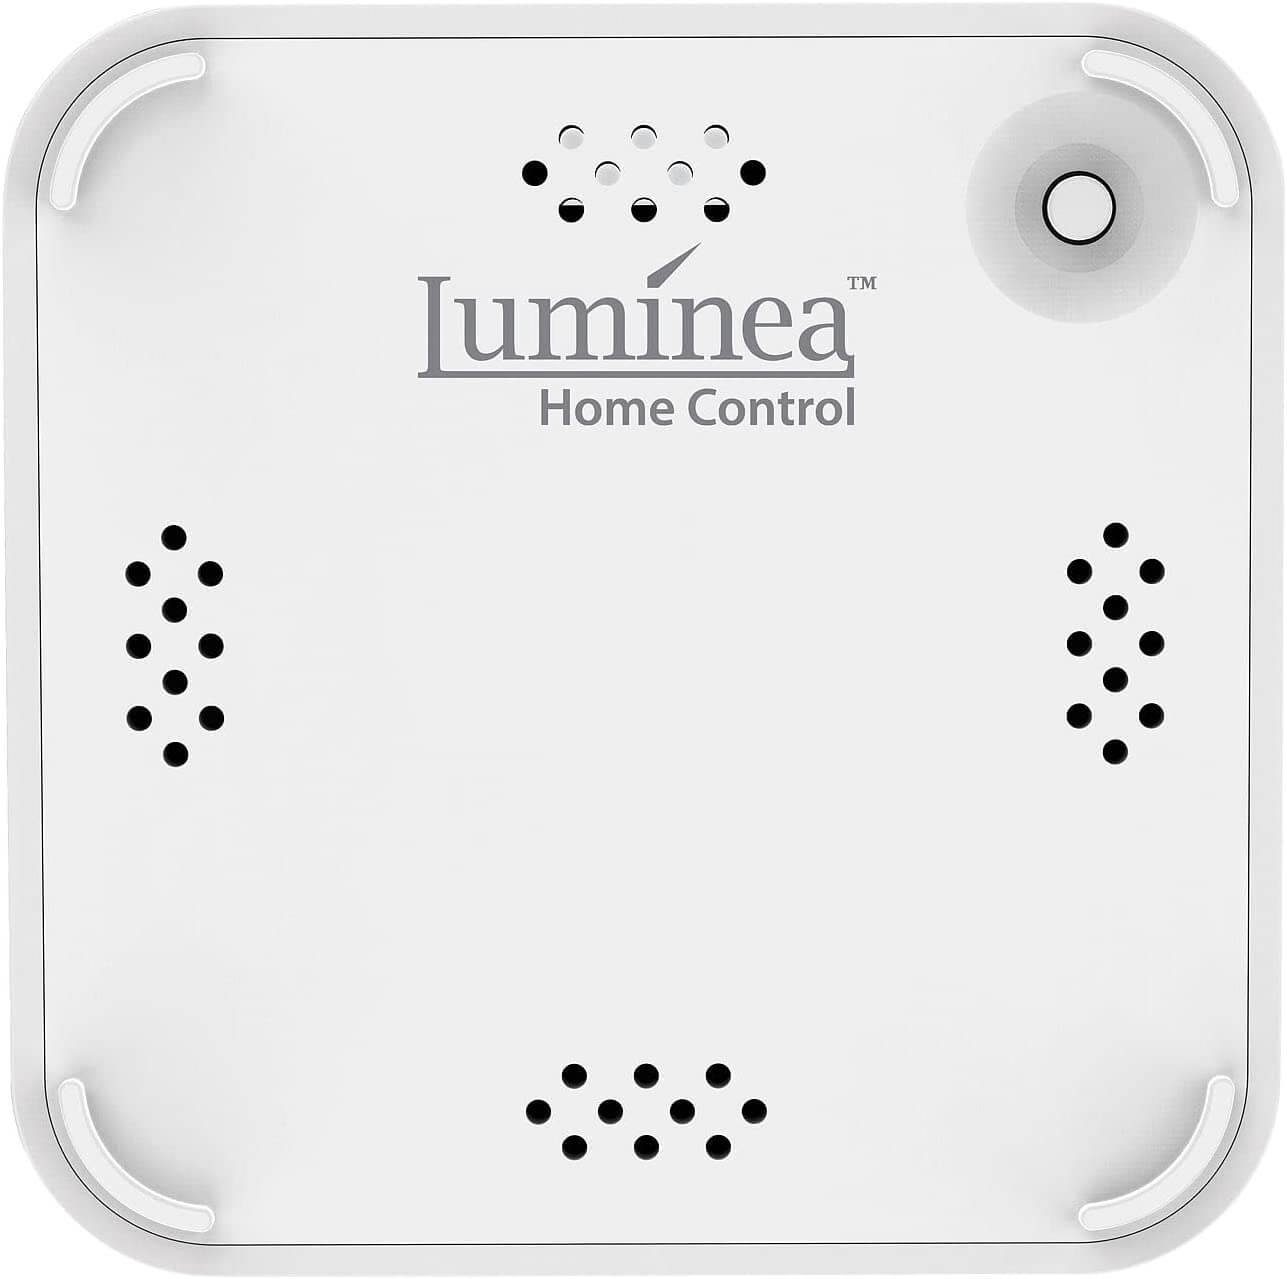 Luminea Home-Control WLAN-Steuerungsmodul RC-350.duo ZigBee elektrische kompatibler Mesh, oder Türschließzylinder Zentrale zum z.B. WiFi Steuern Heizkörper-Thermostate Geräte, App Smart Home WLAN Gateway für